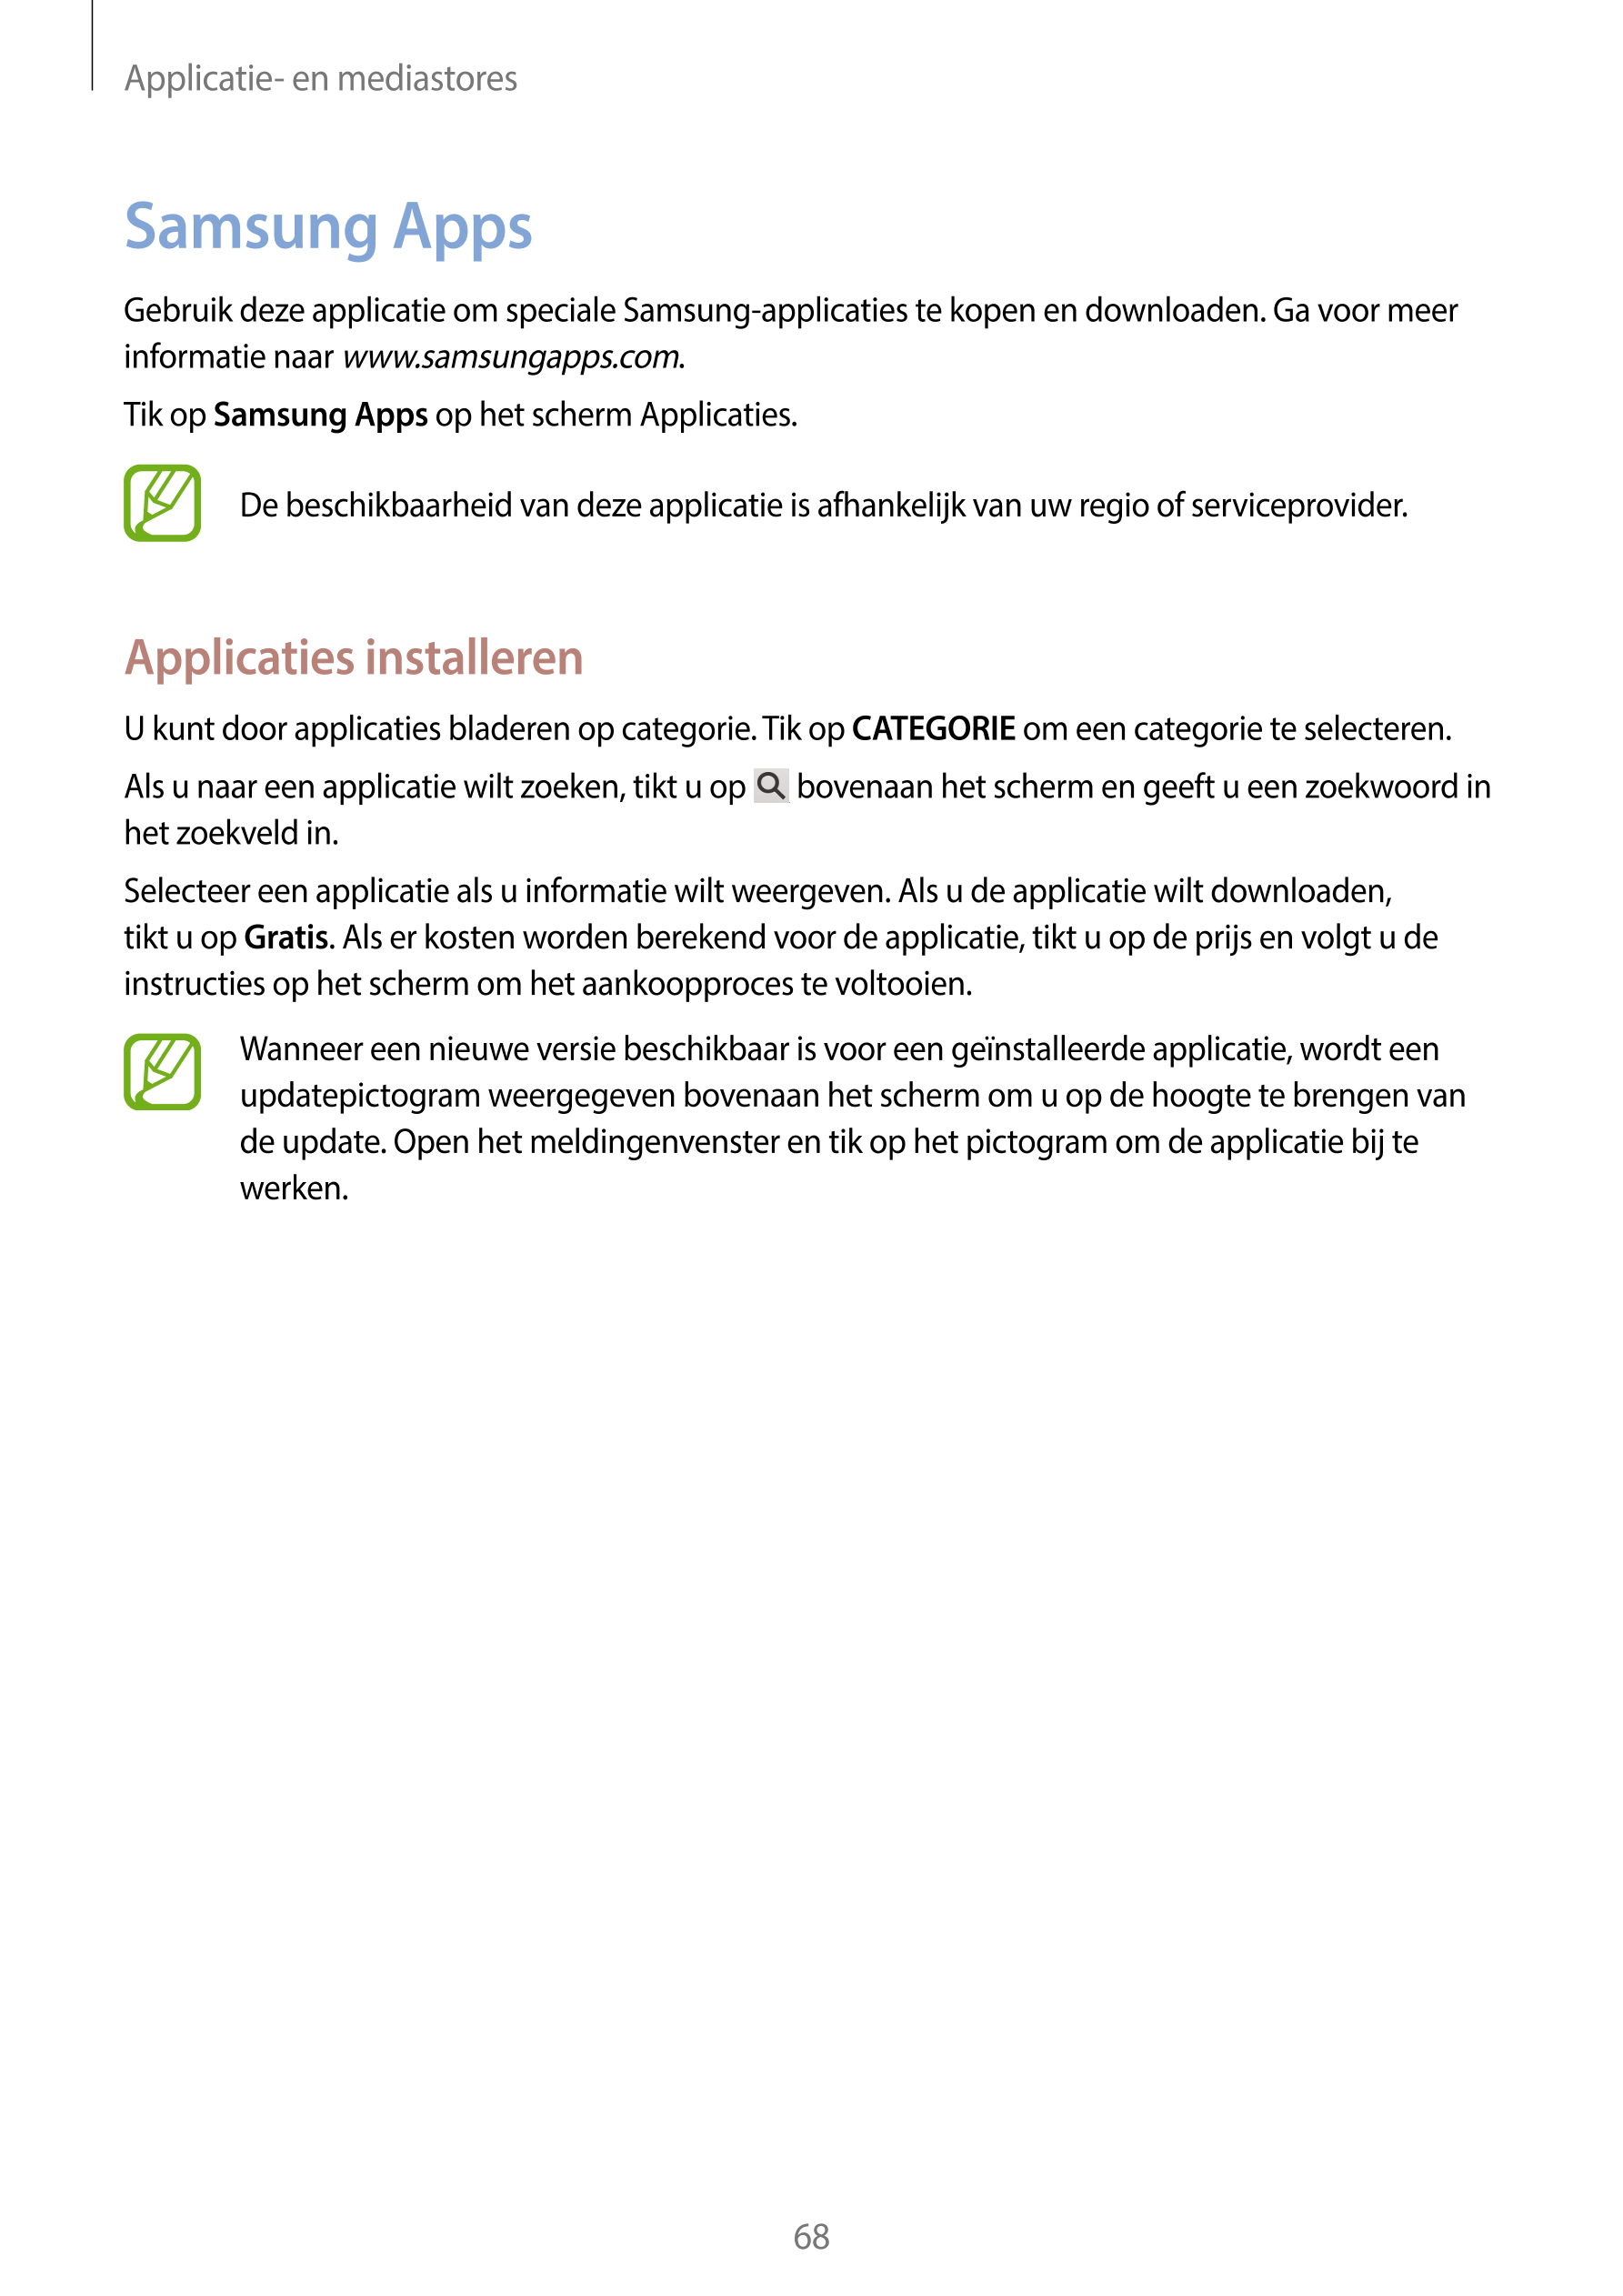 Applicatie- en mediastores
Samsung Apps
Gebruik deze applicatie om speciale Samsung-applicaties te kopen en downloaden. Ga voor 